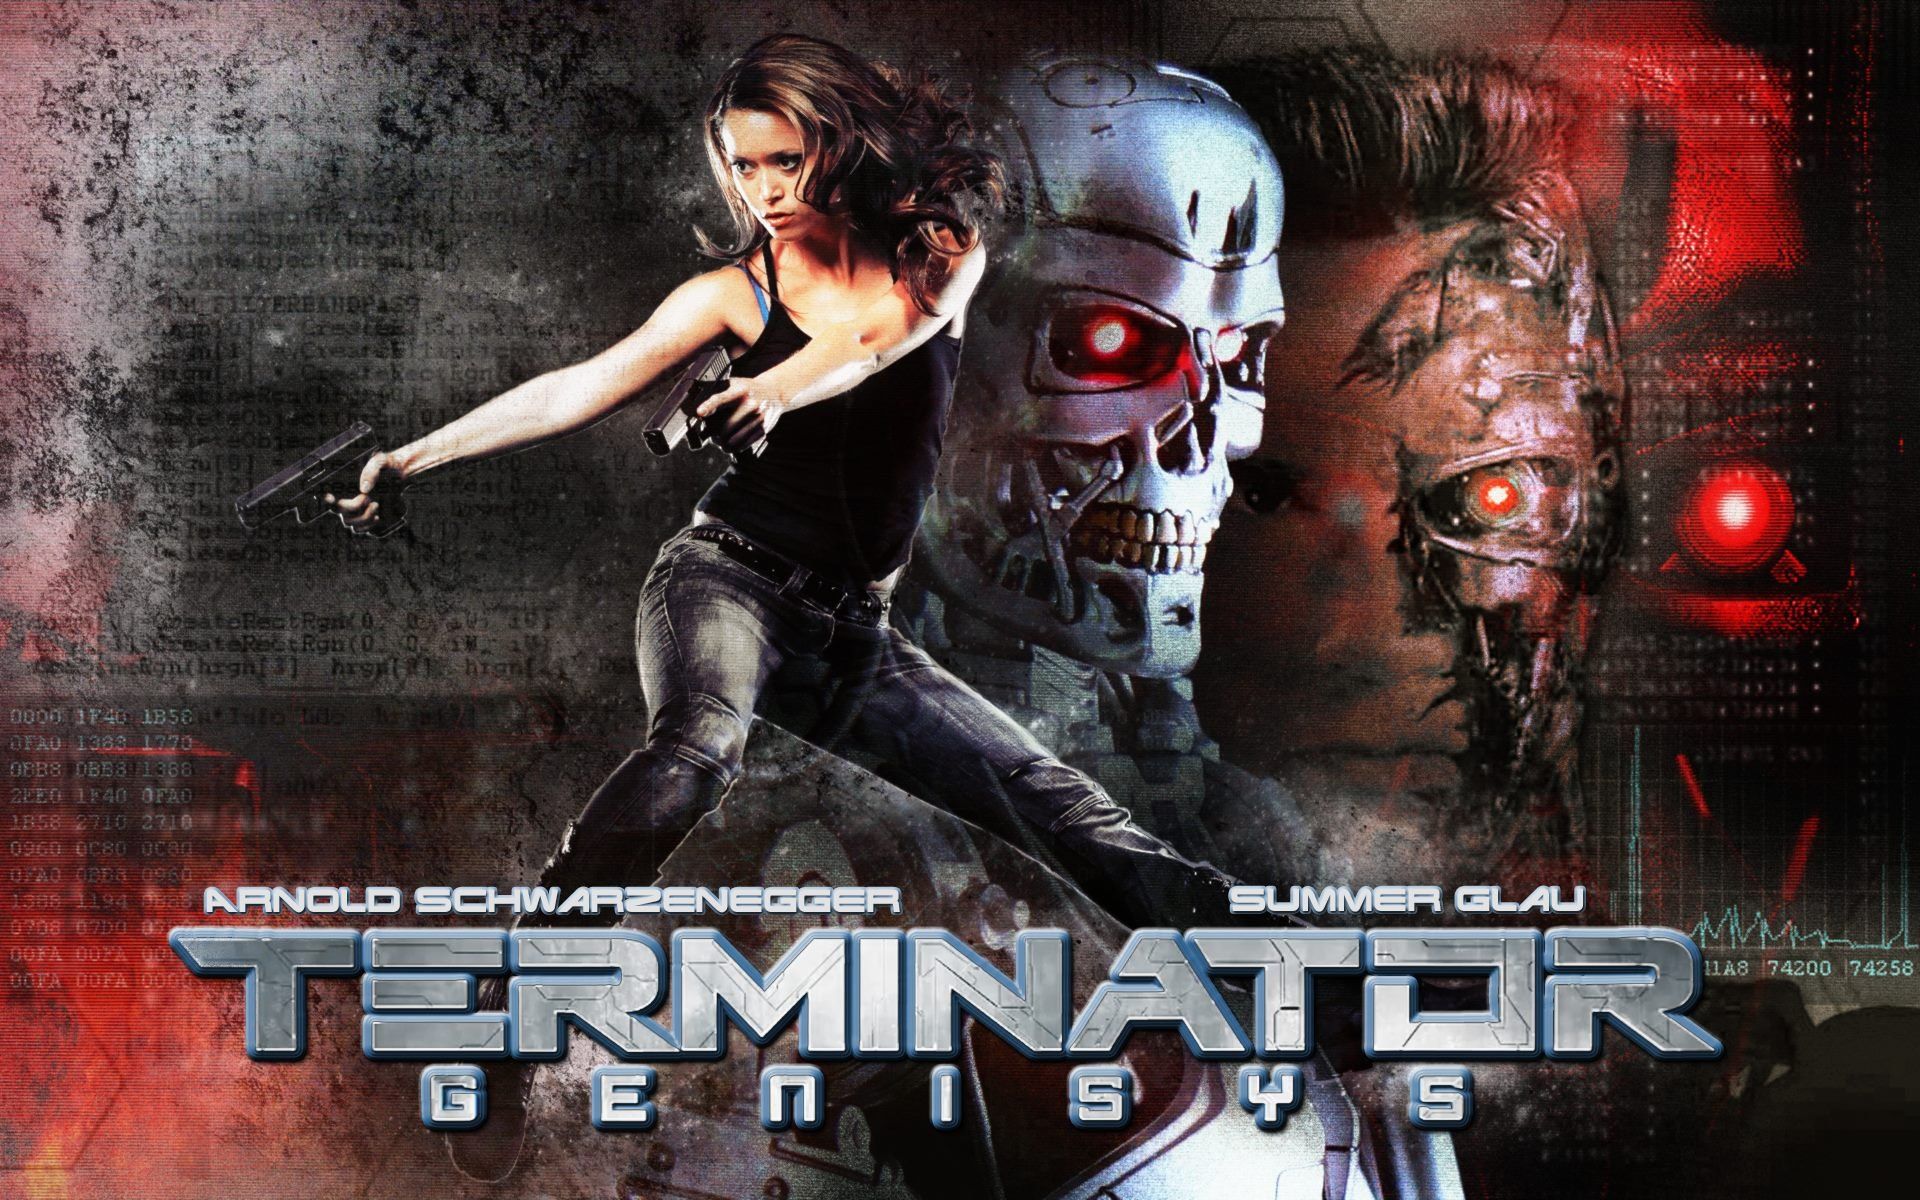 Terminator Genisys Hd Wallpaper - Film Terminator Genisys 2015 , HD Wallpaper & Backgrounds